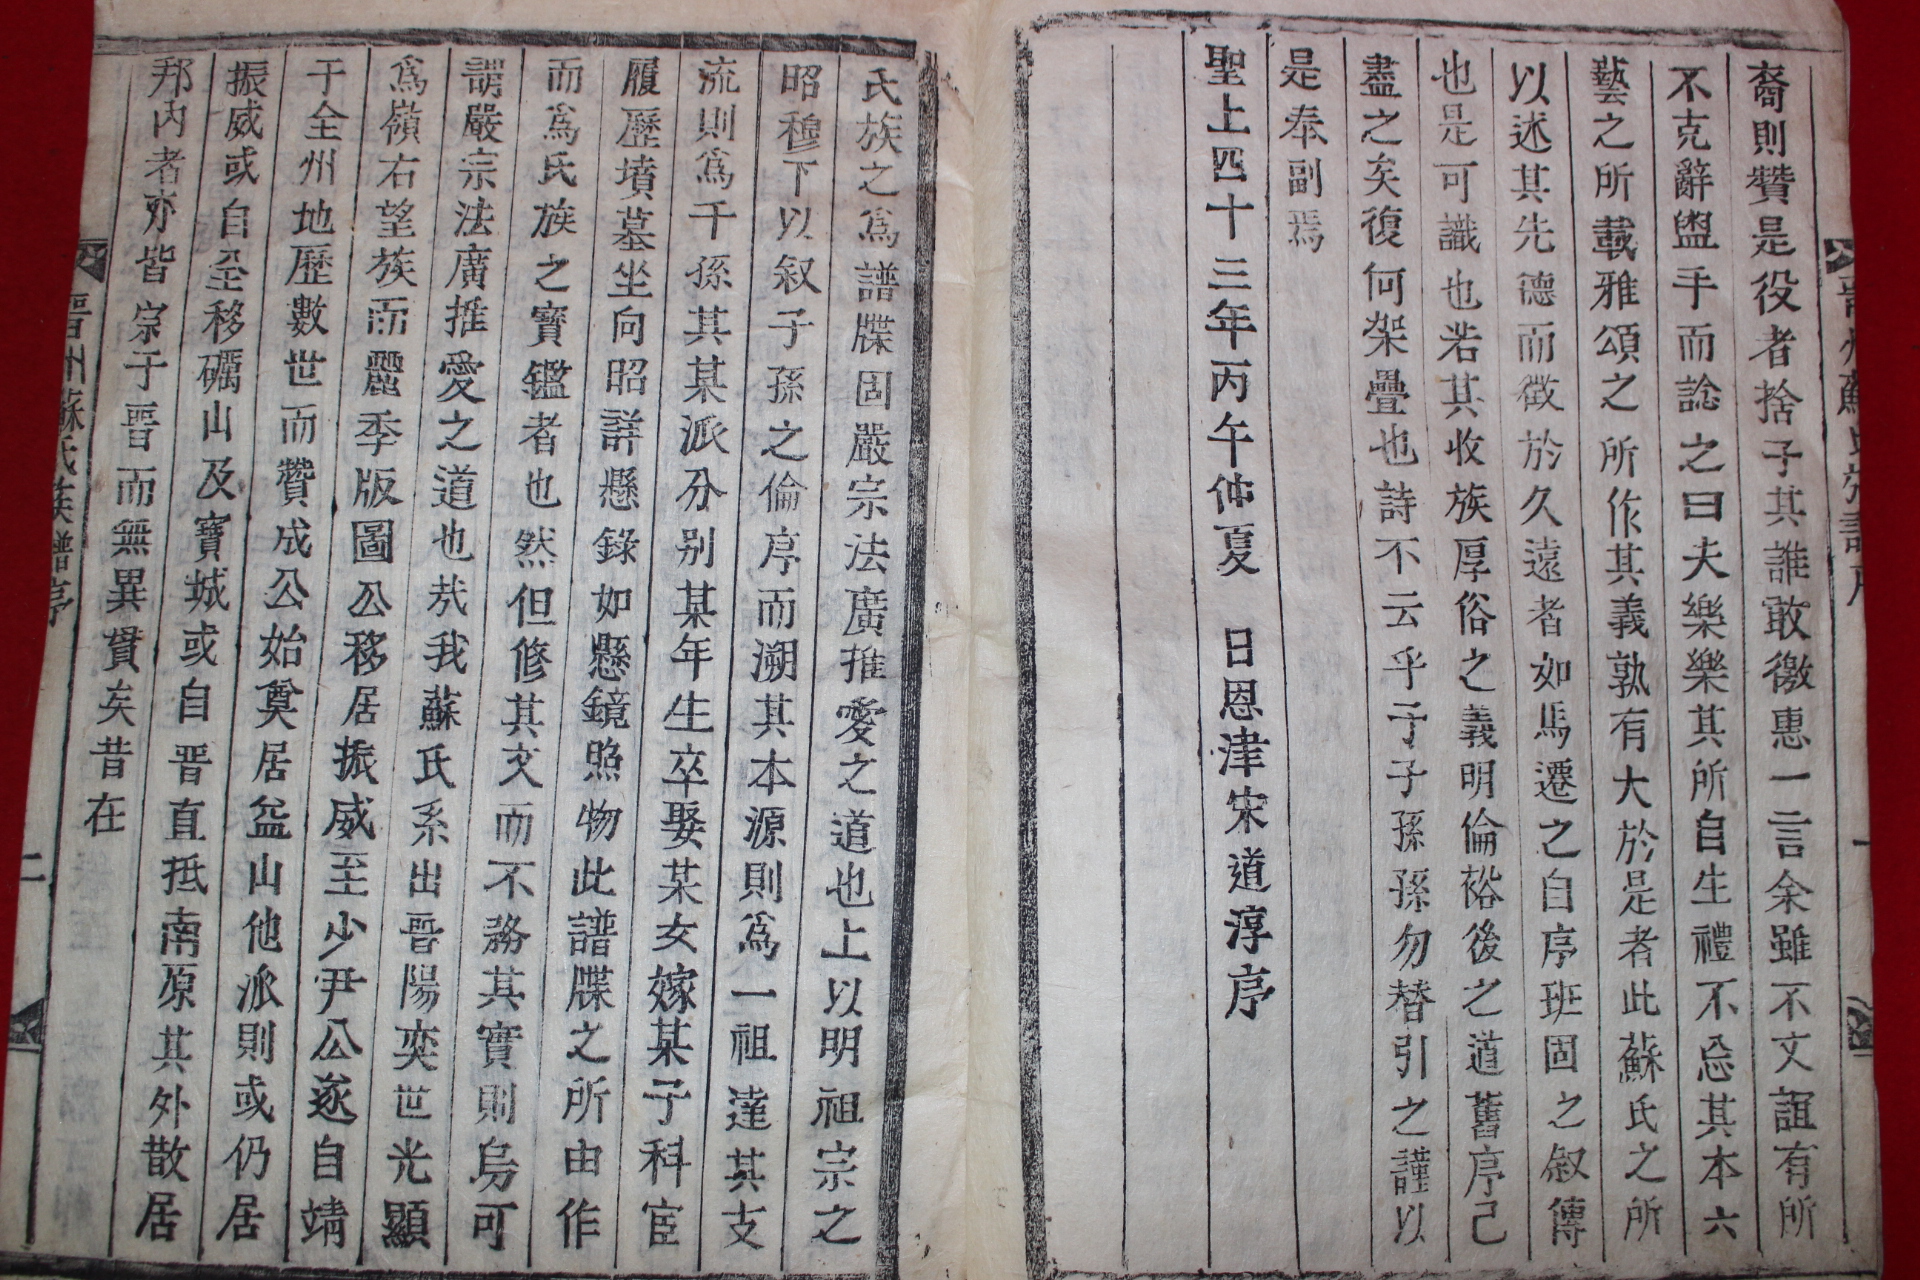 1906년 목활자본 진주소씨족보(晋州蘇氏族譜) 18권11책완질